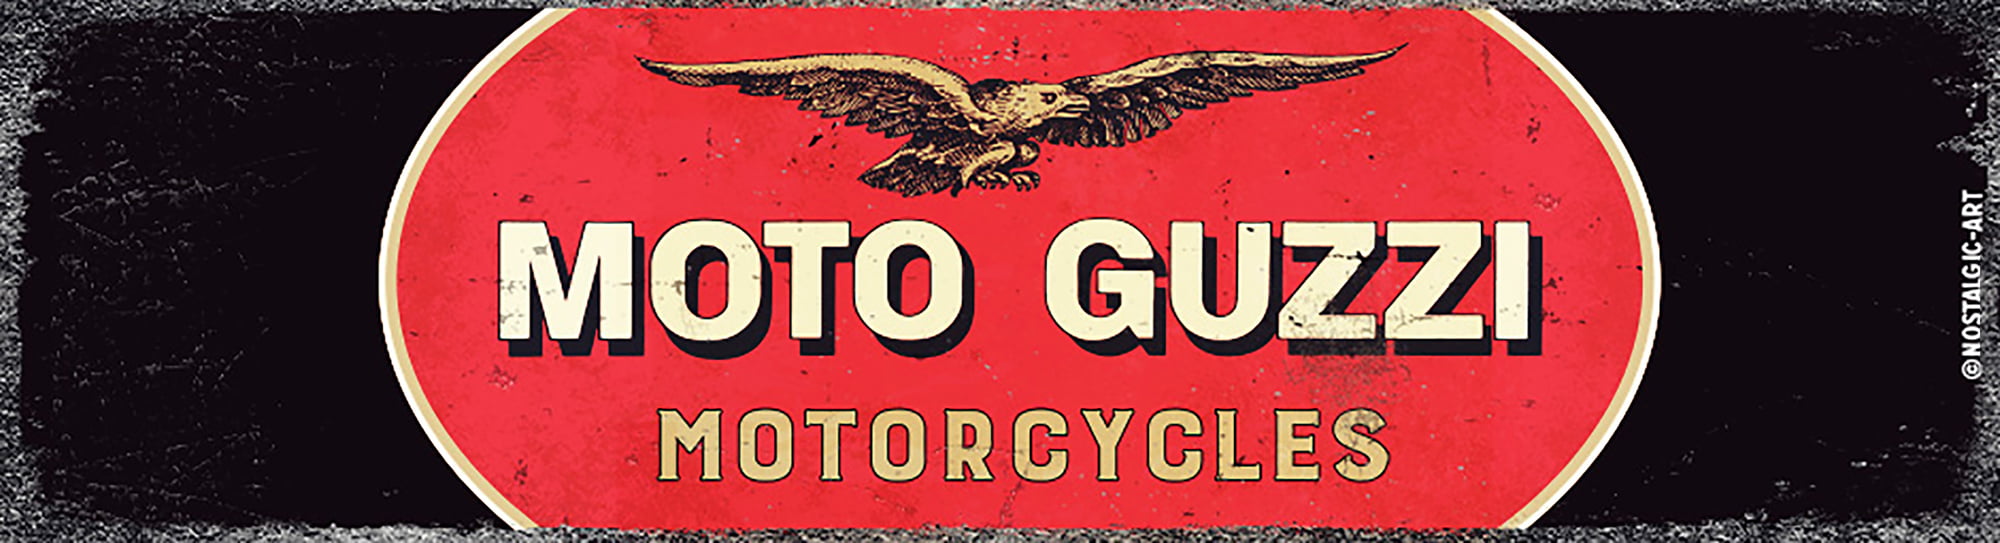 Markenshop – Moto Guzzi